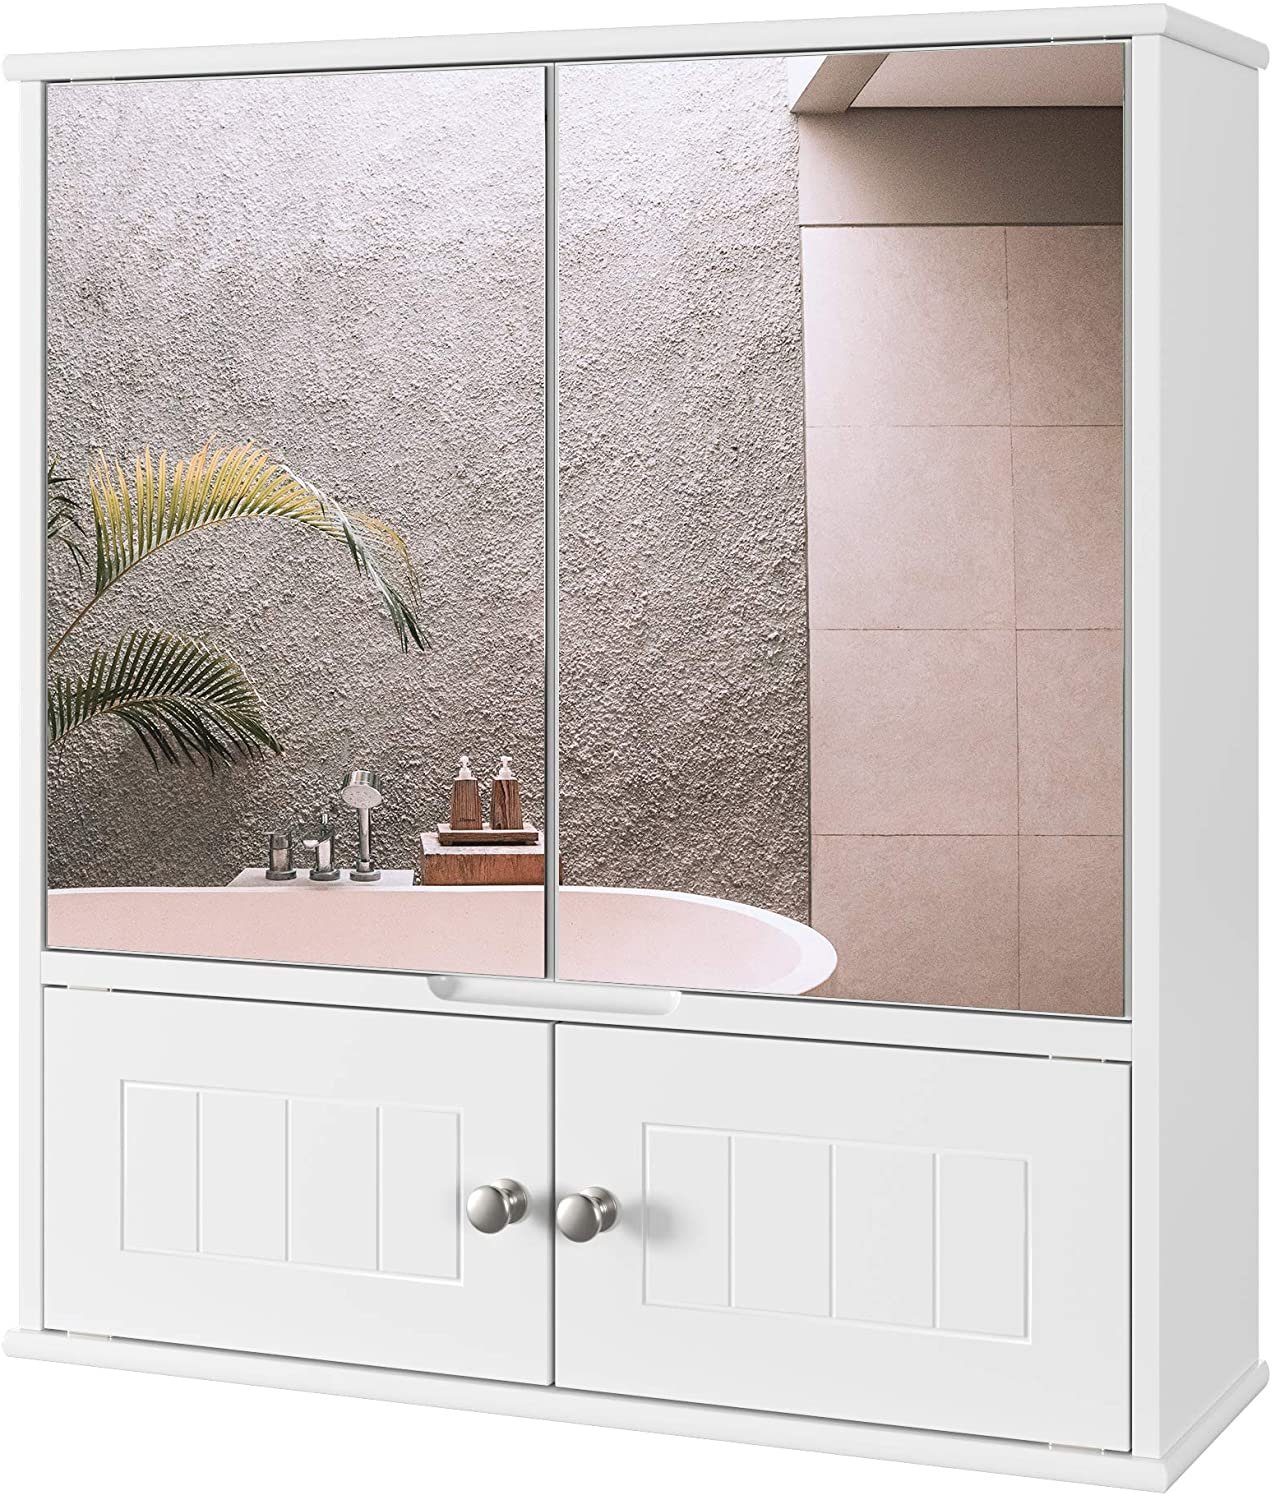 HOMECHO Badezimmerspiegelschrank Spiegelschrank Badschrank mit Spiegel Bad  Hängeschrank mit Ablage online kaufen | OTTO